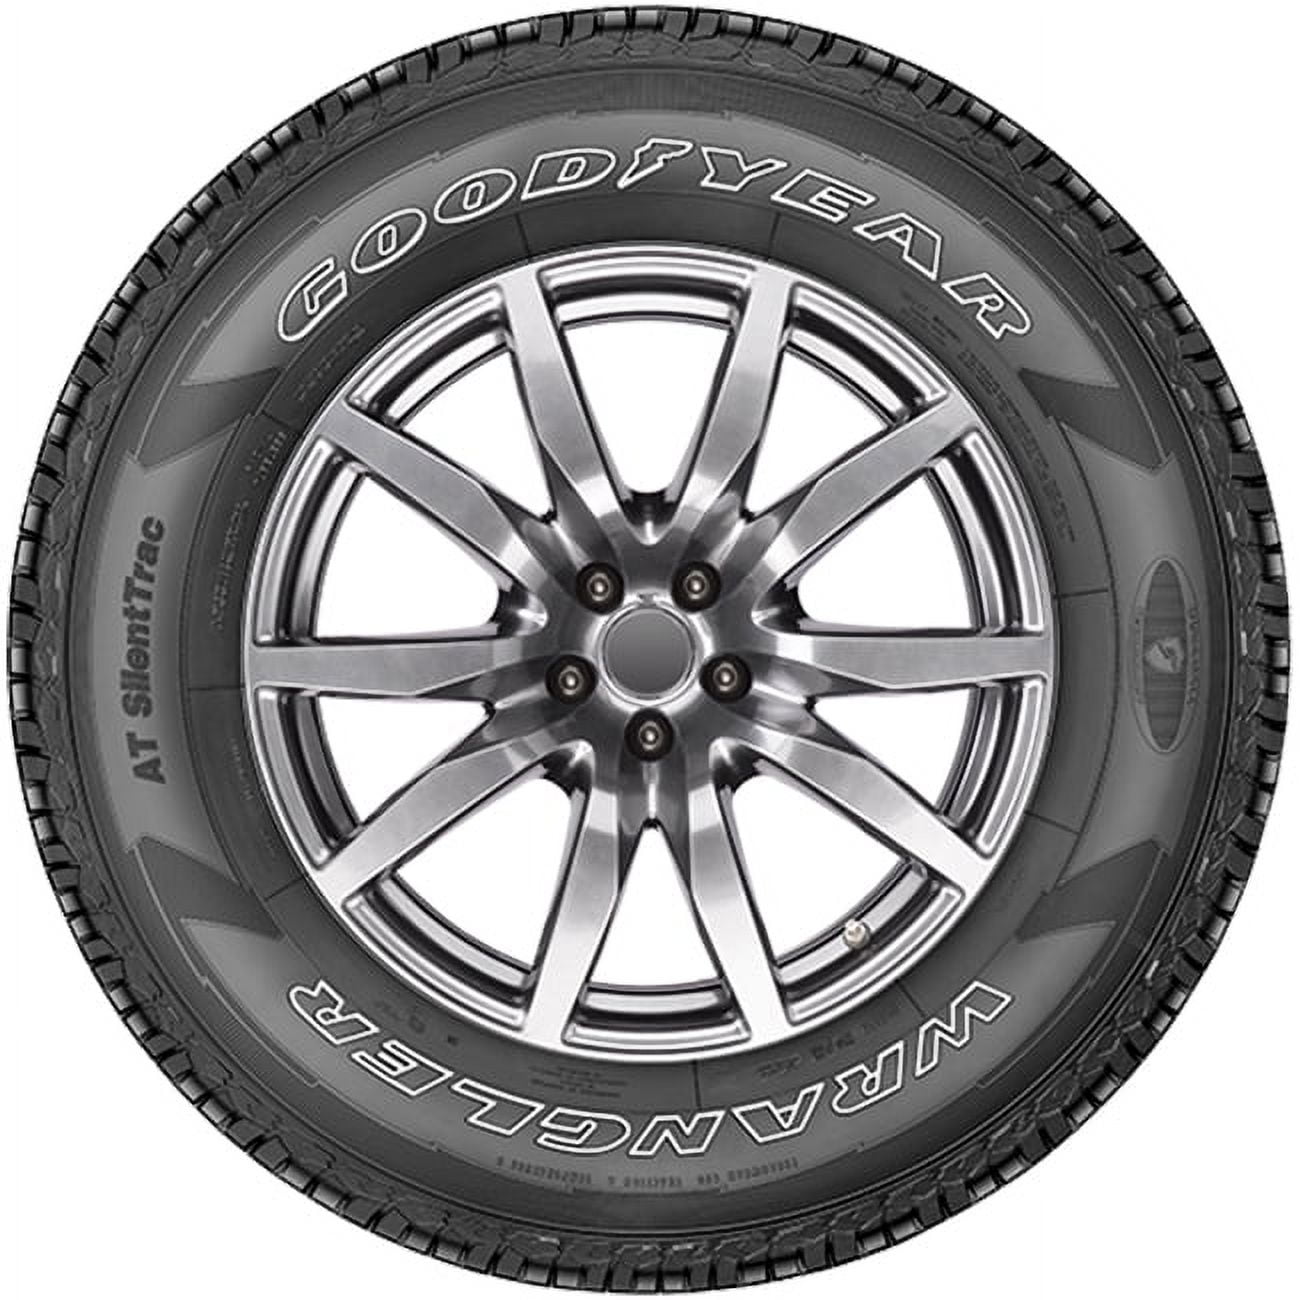 Tire Goodyear Wrangler AT SilentTrac 245/70R16 111T XL A/T All Terrain